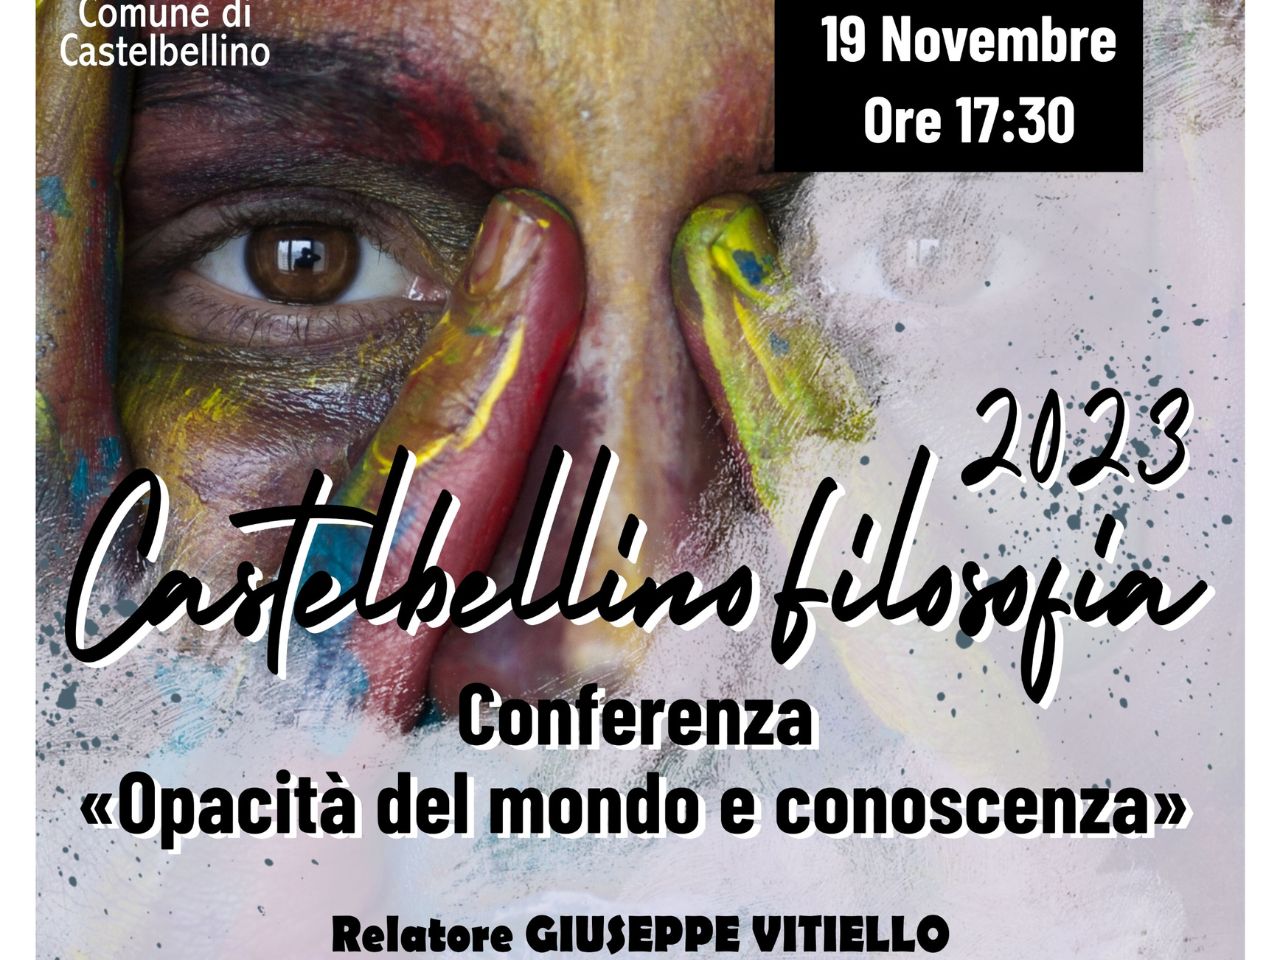 Domenica di filosofia a Castelbellino con il Professor Vitiello